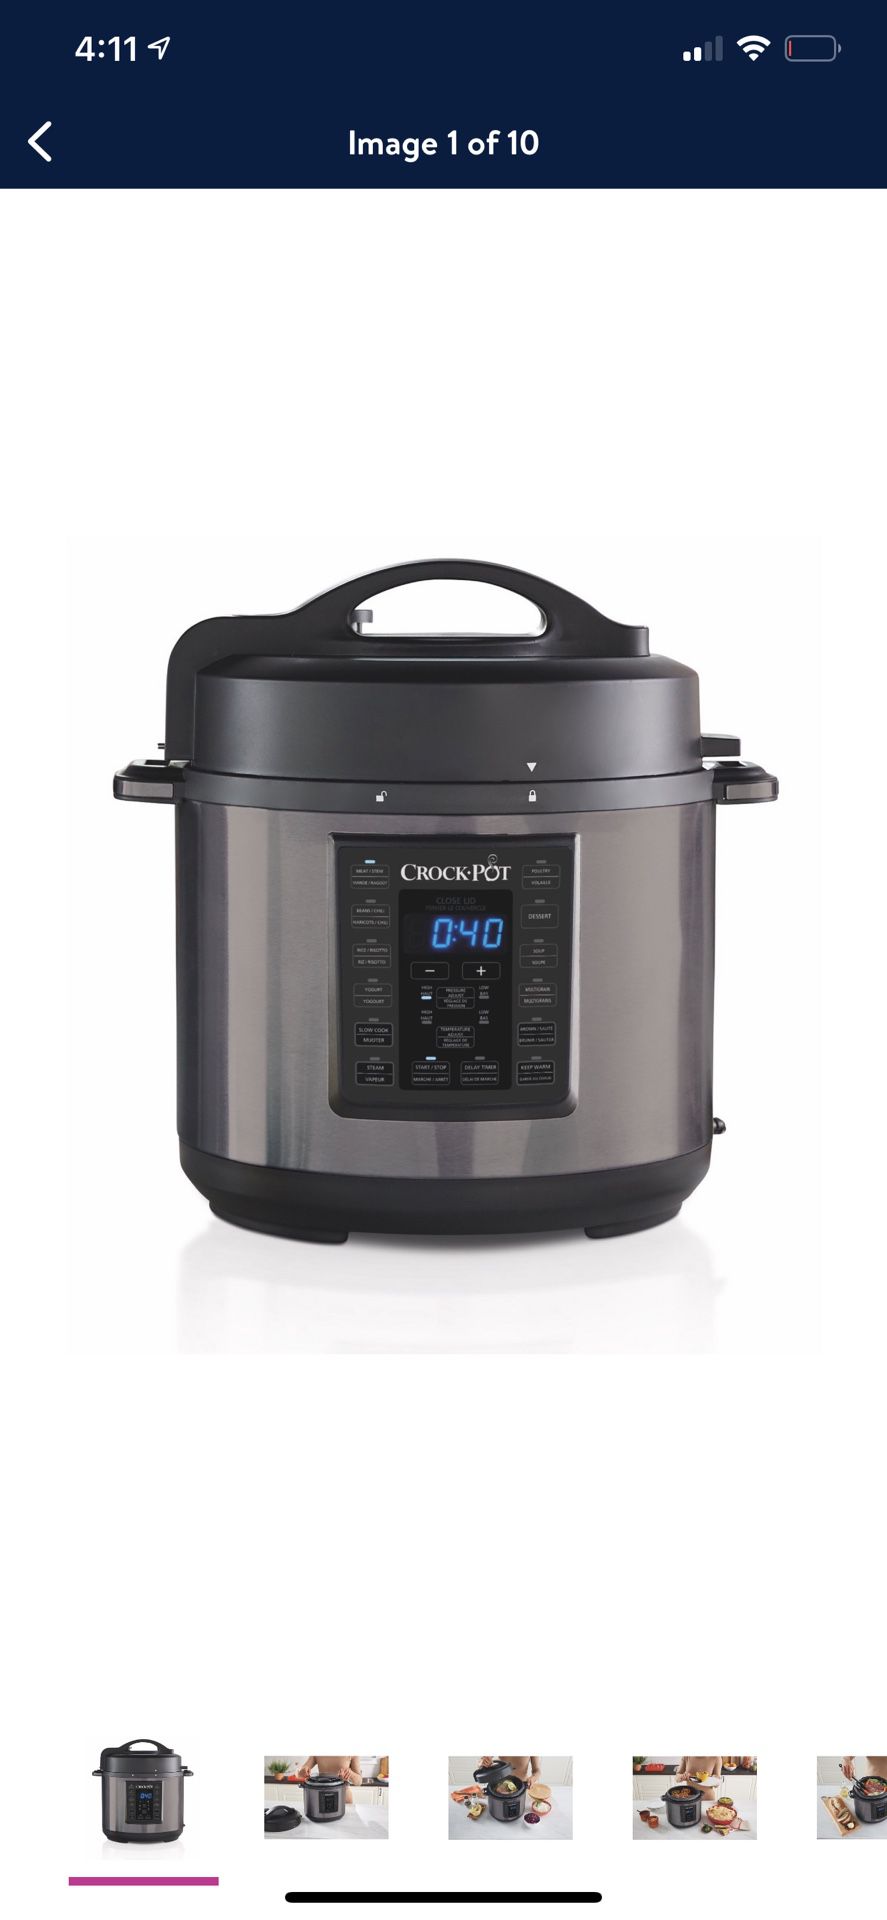 Crock-Pot 6 Qt 8-in-1 Multi-Use pressure cooker